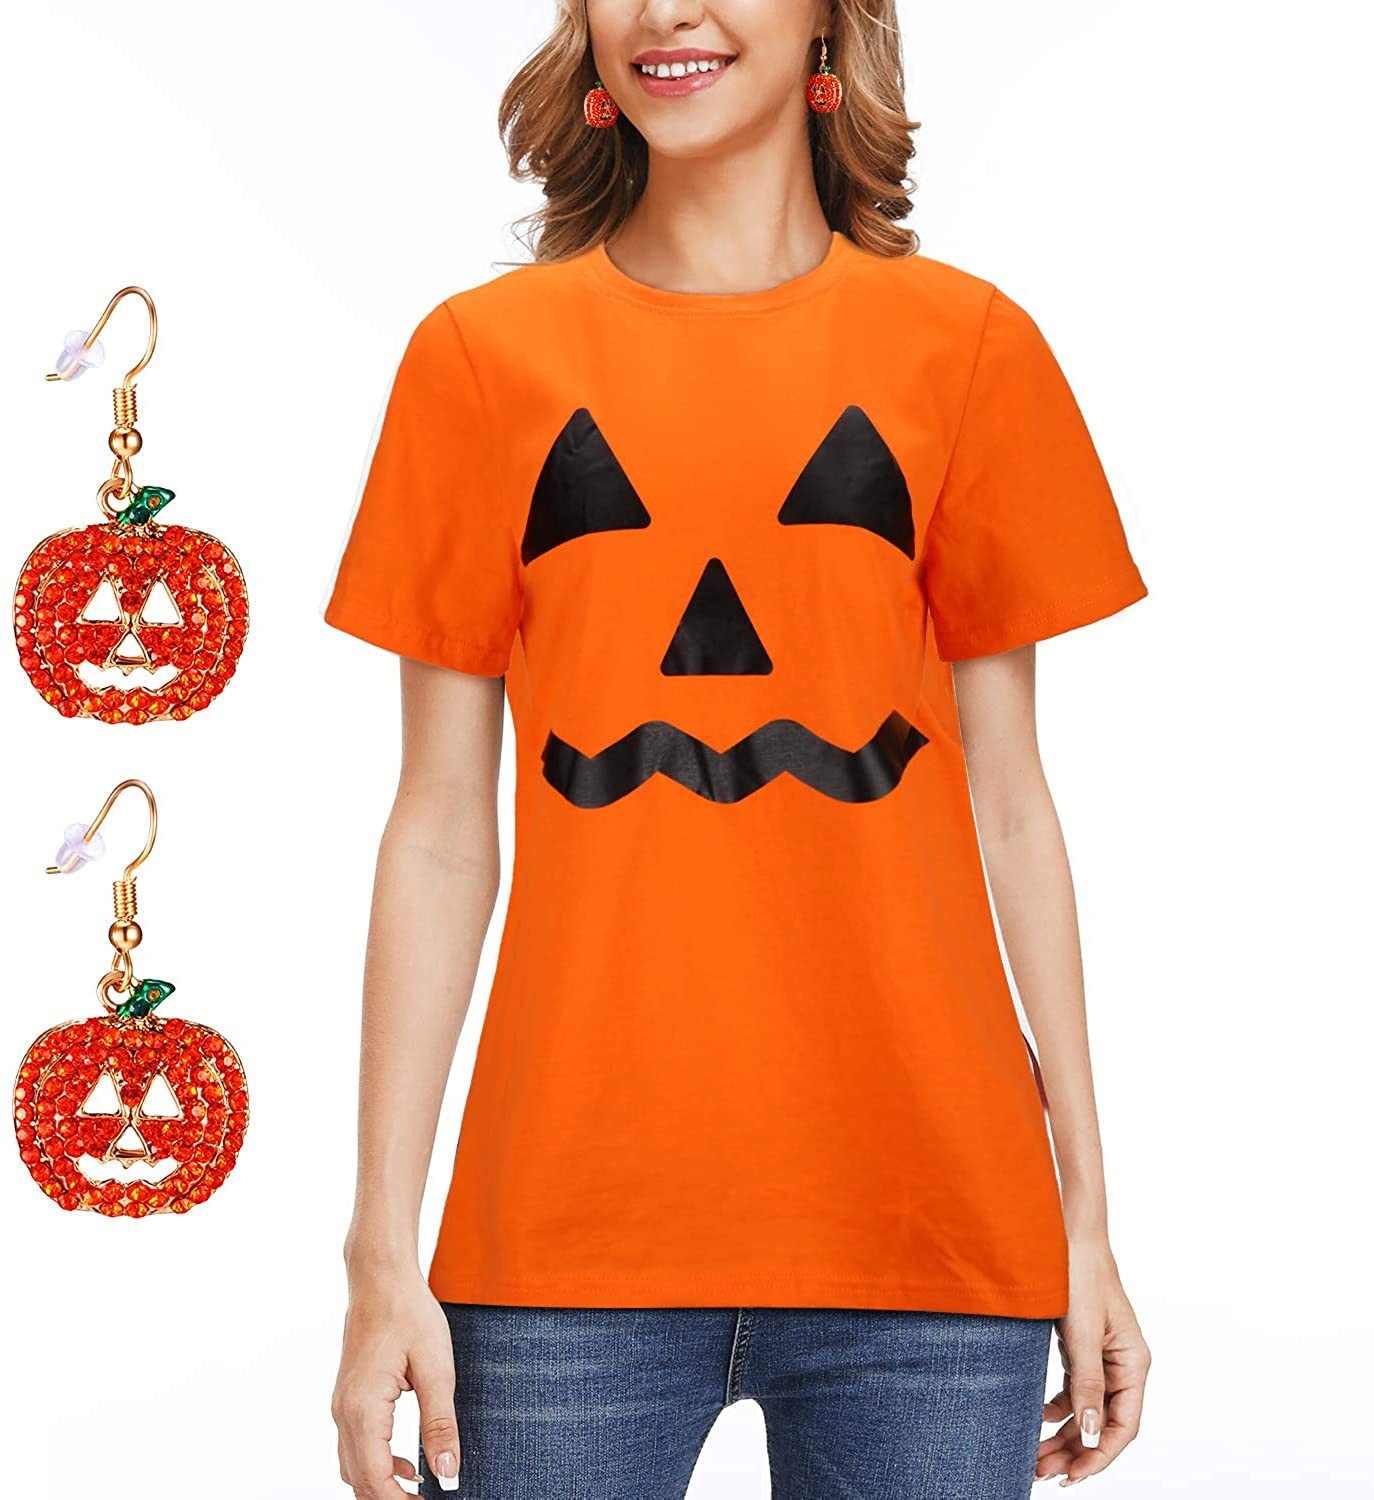 Lantern Pumpkin Halloween Costume T-Shirt